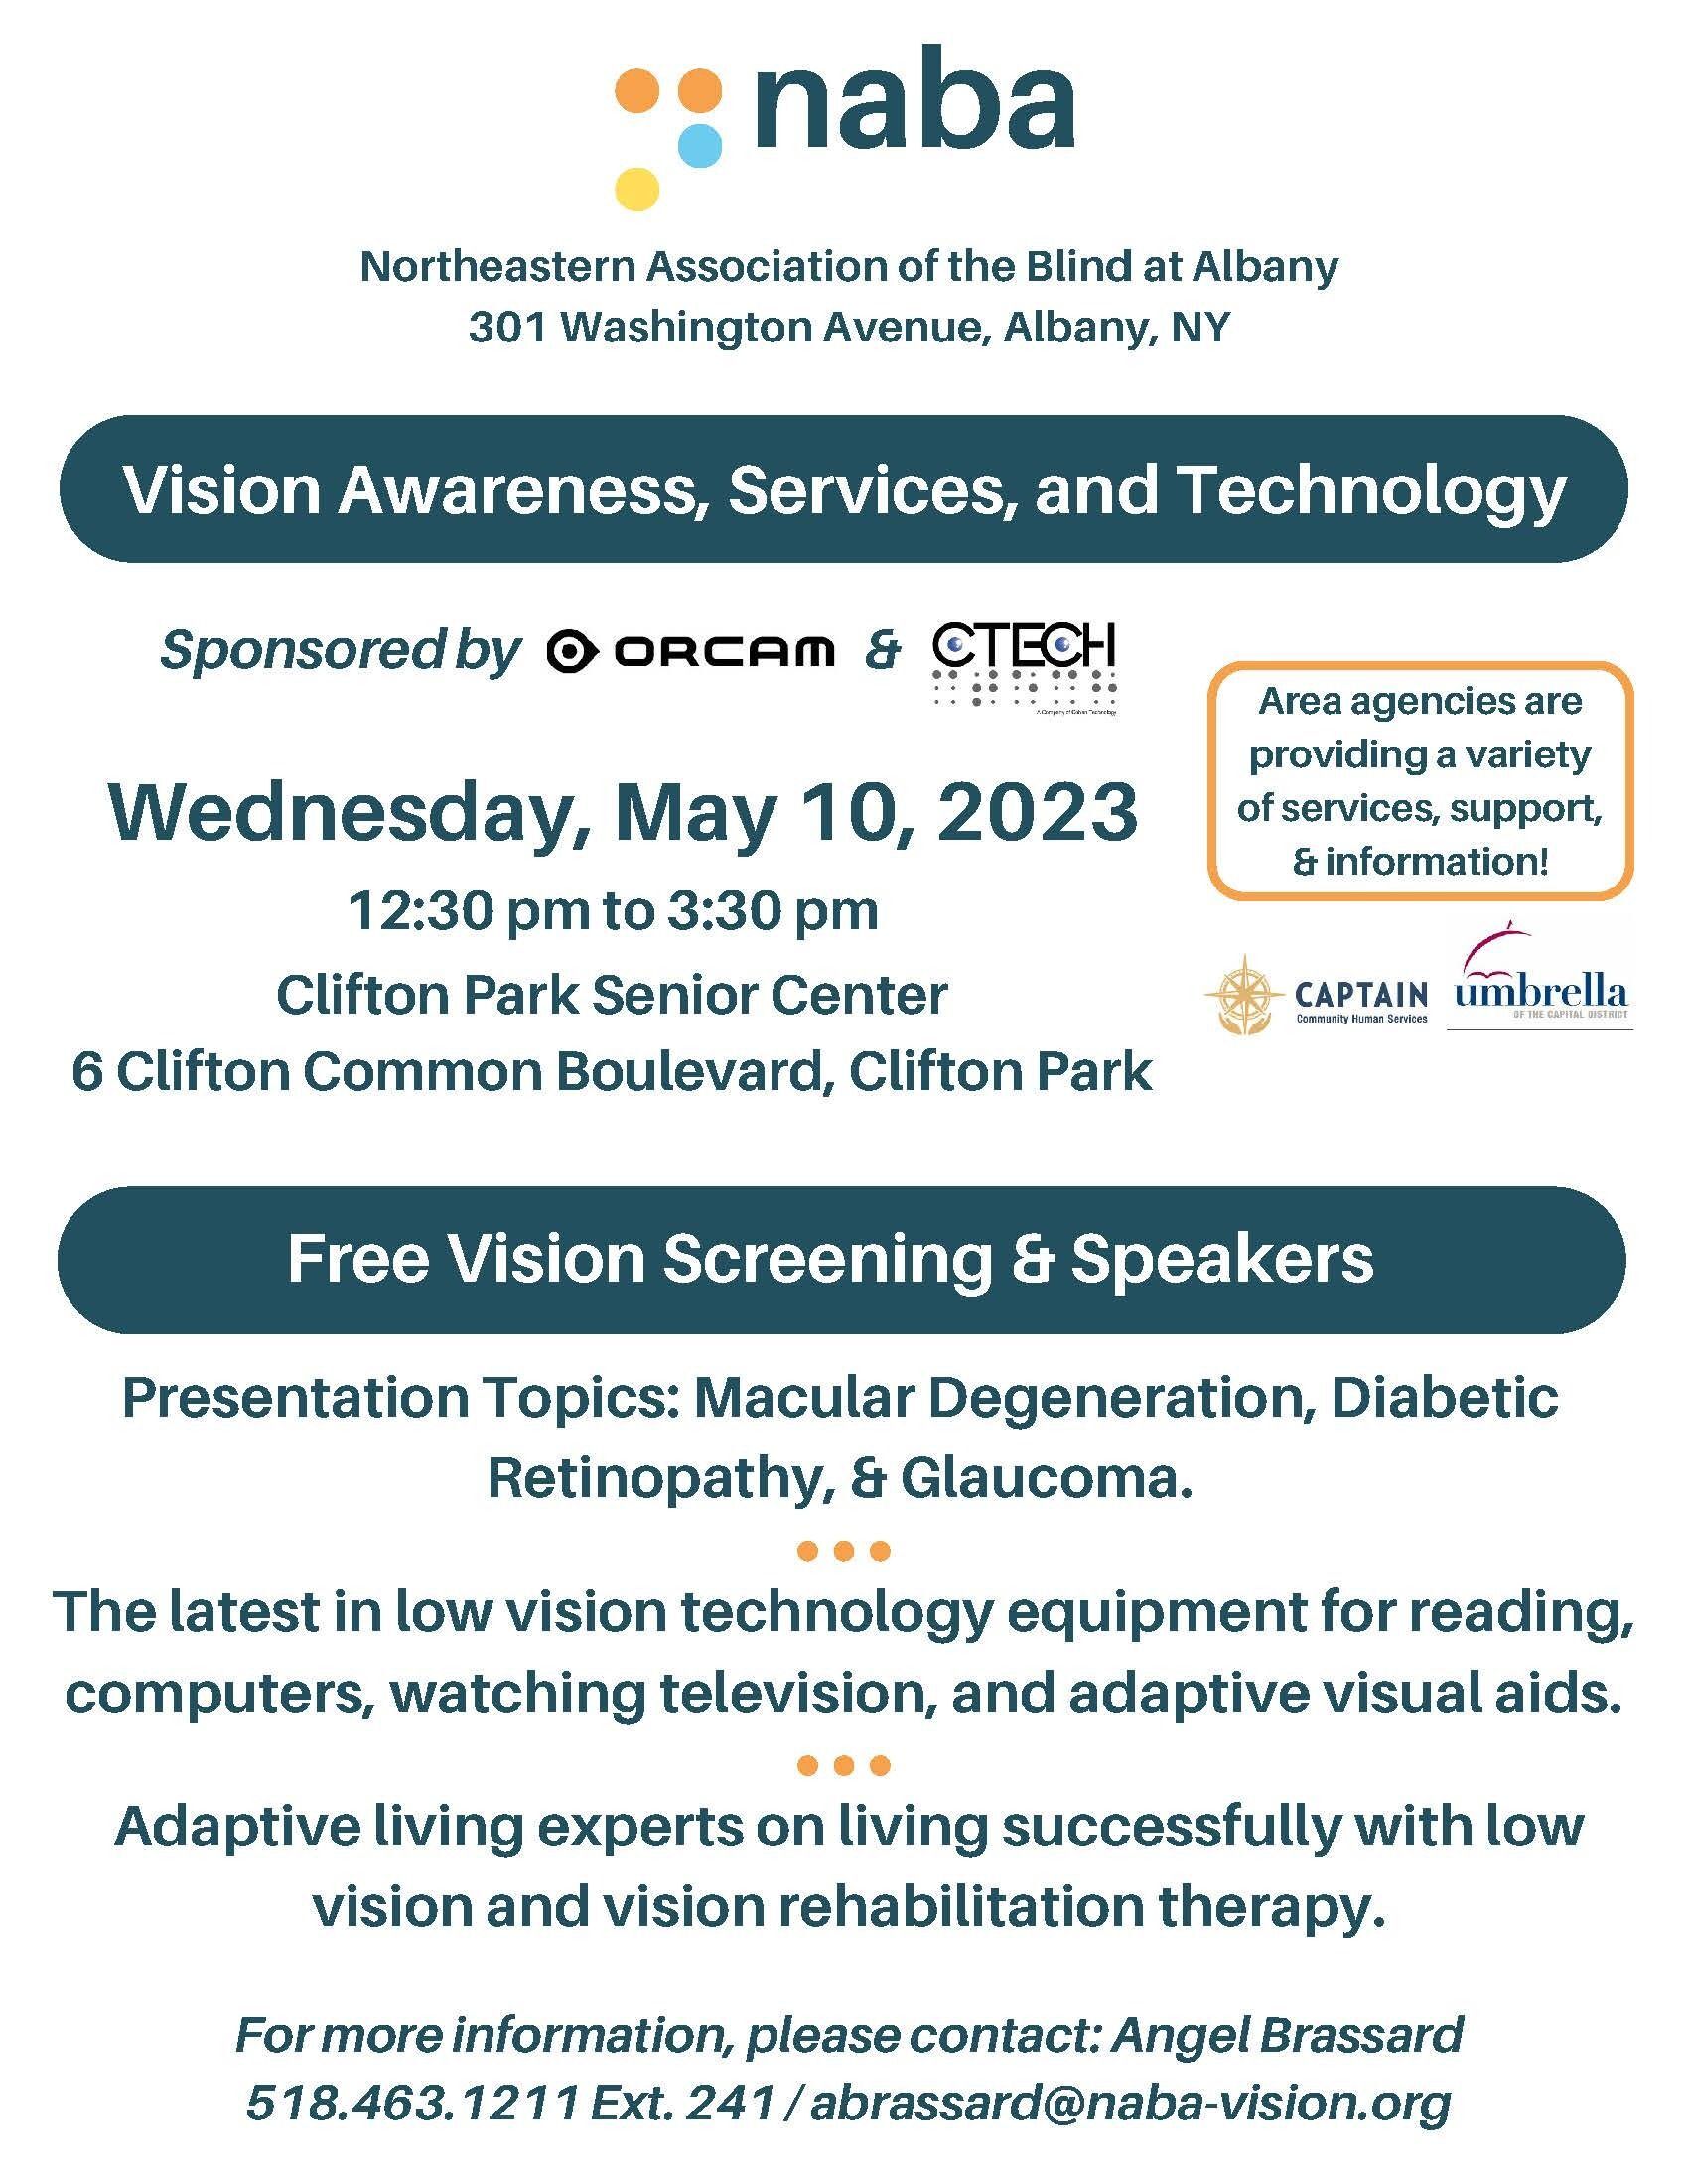 NABA Vision Fair: May 10th!